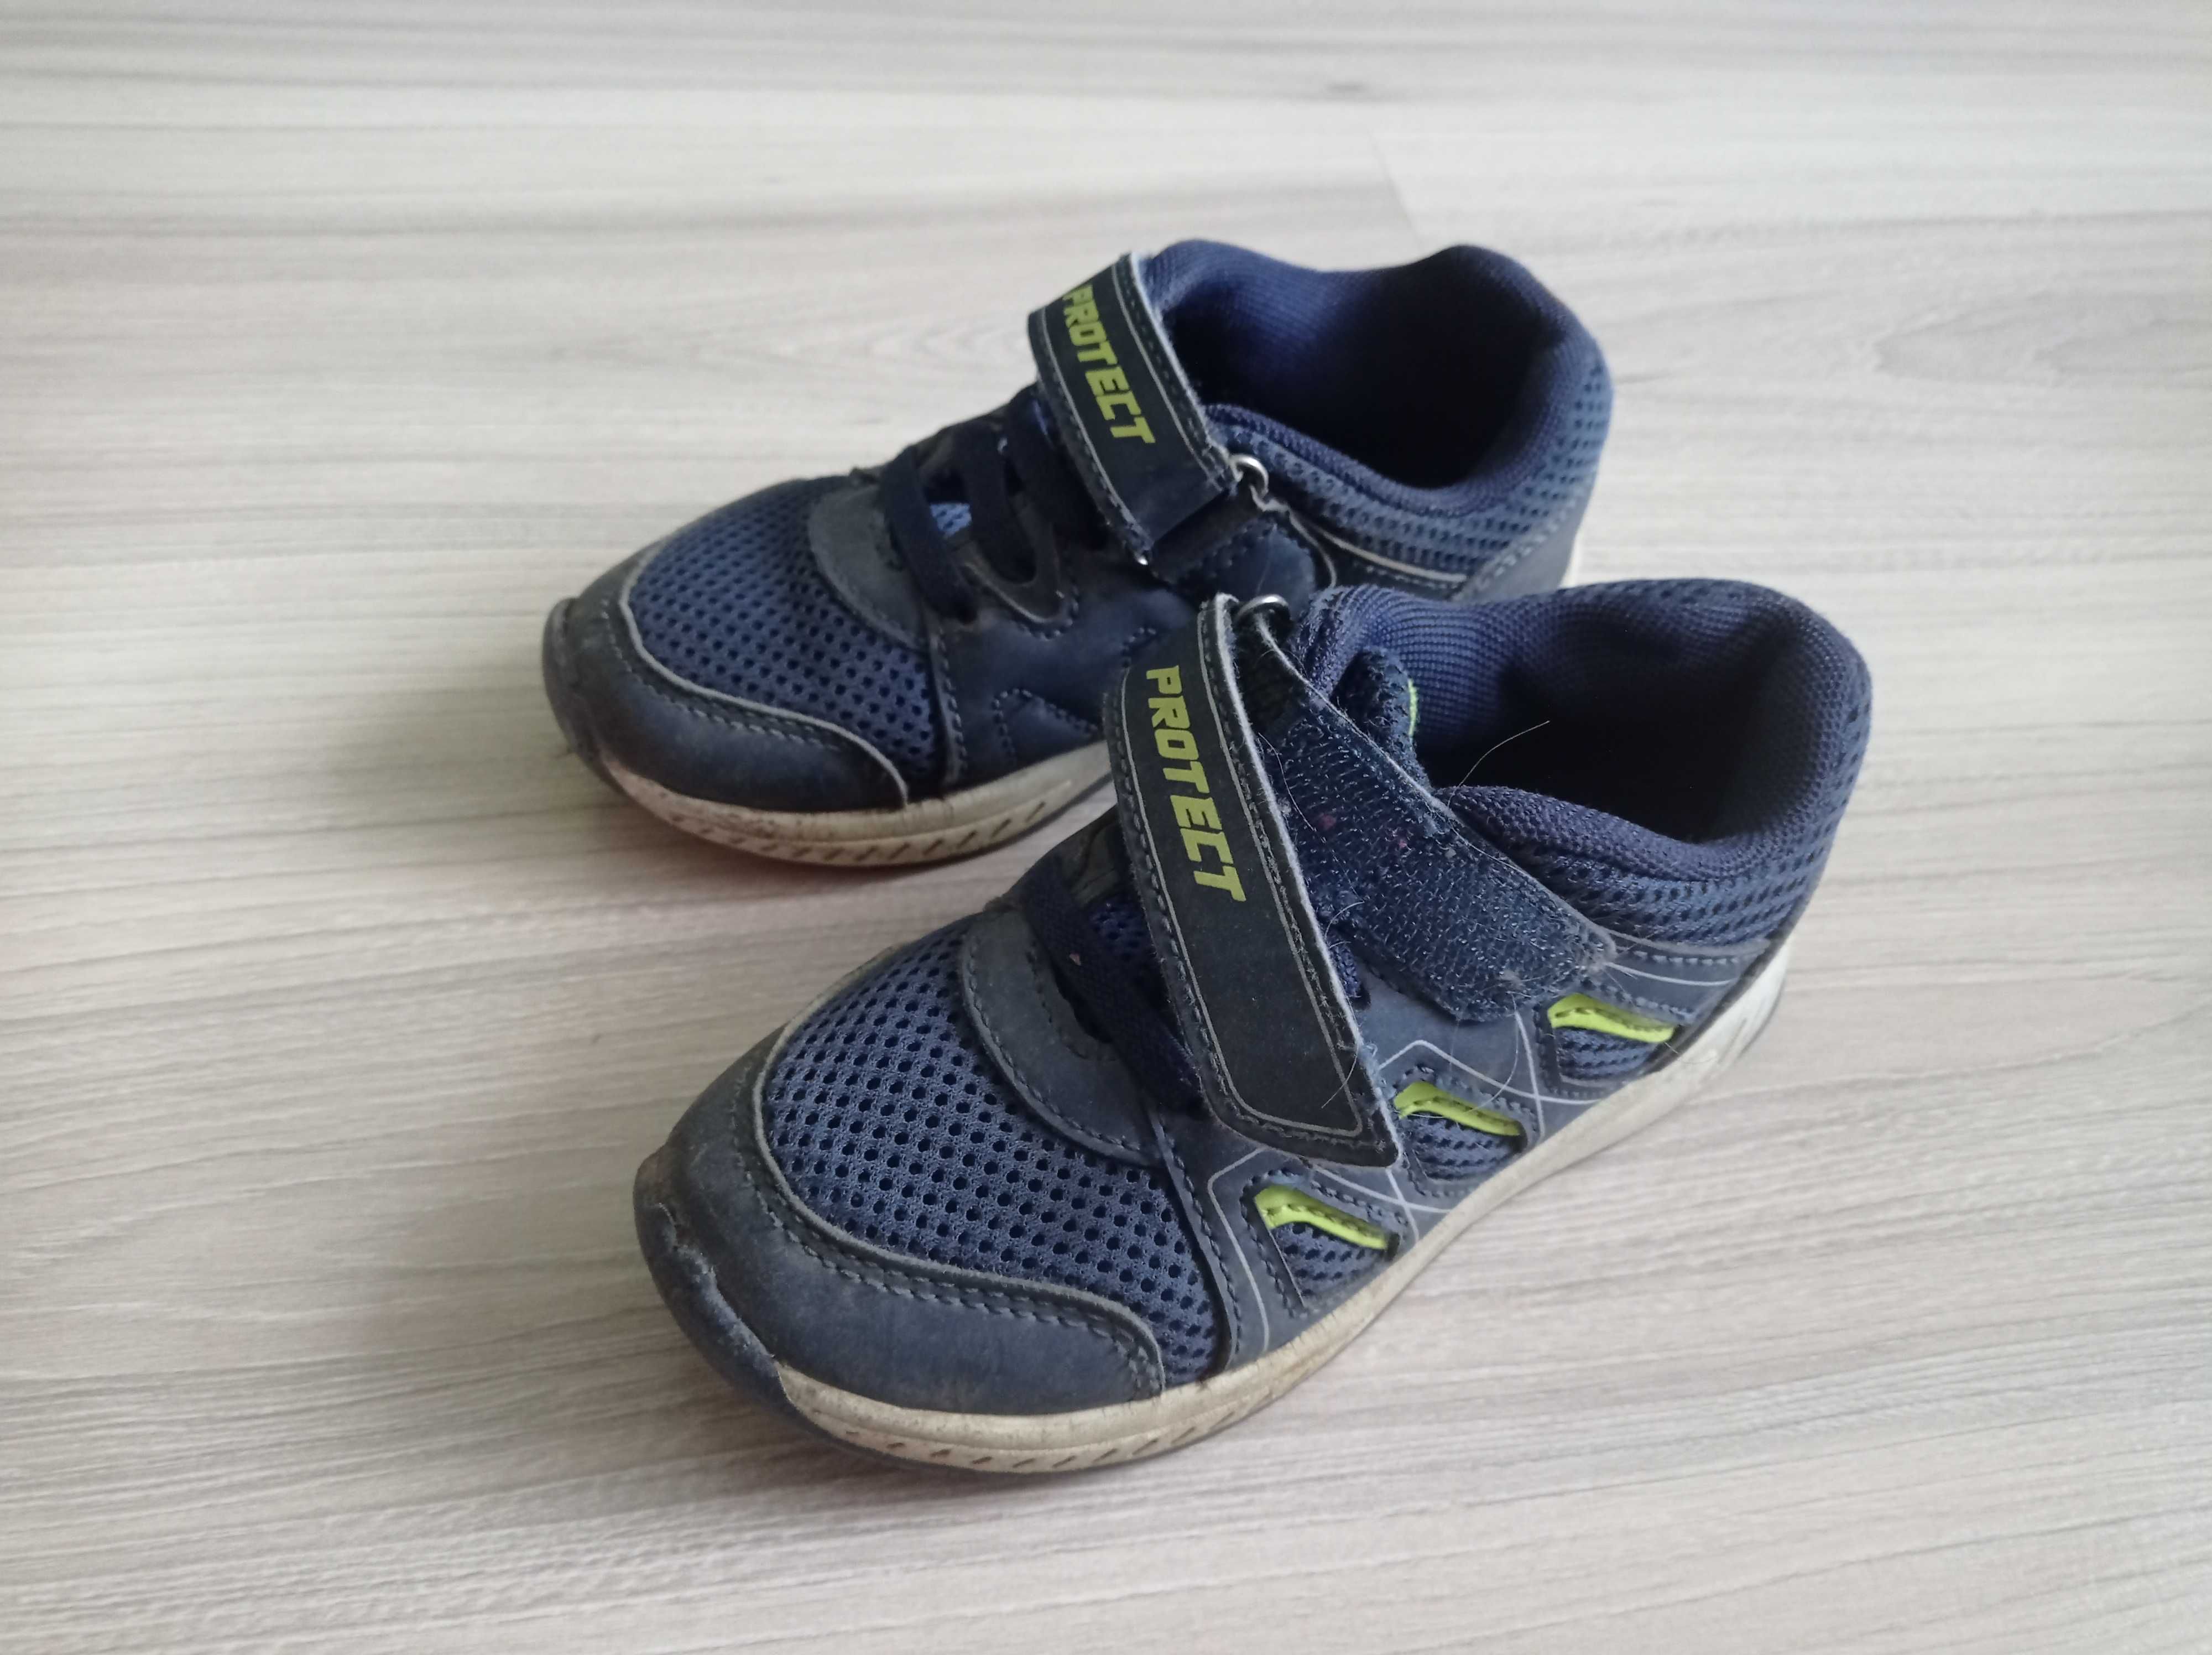 Buty adidasy dla chłopca, Deichmann, Bobbi Shoes, rozmiar 26